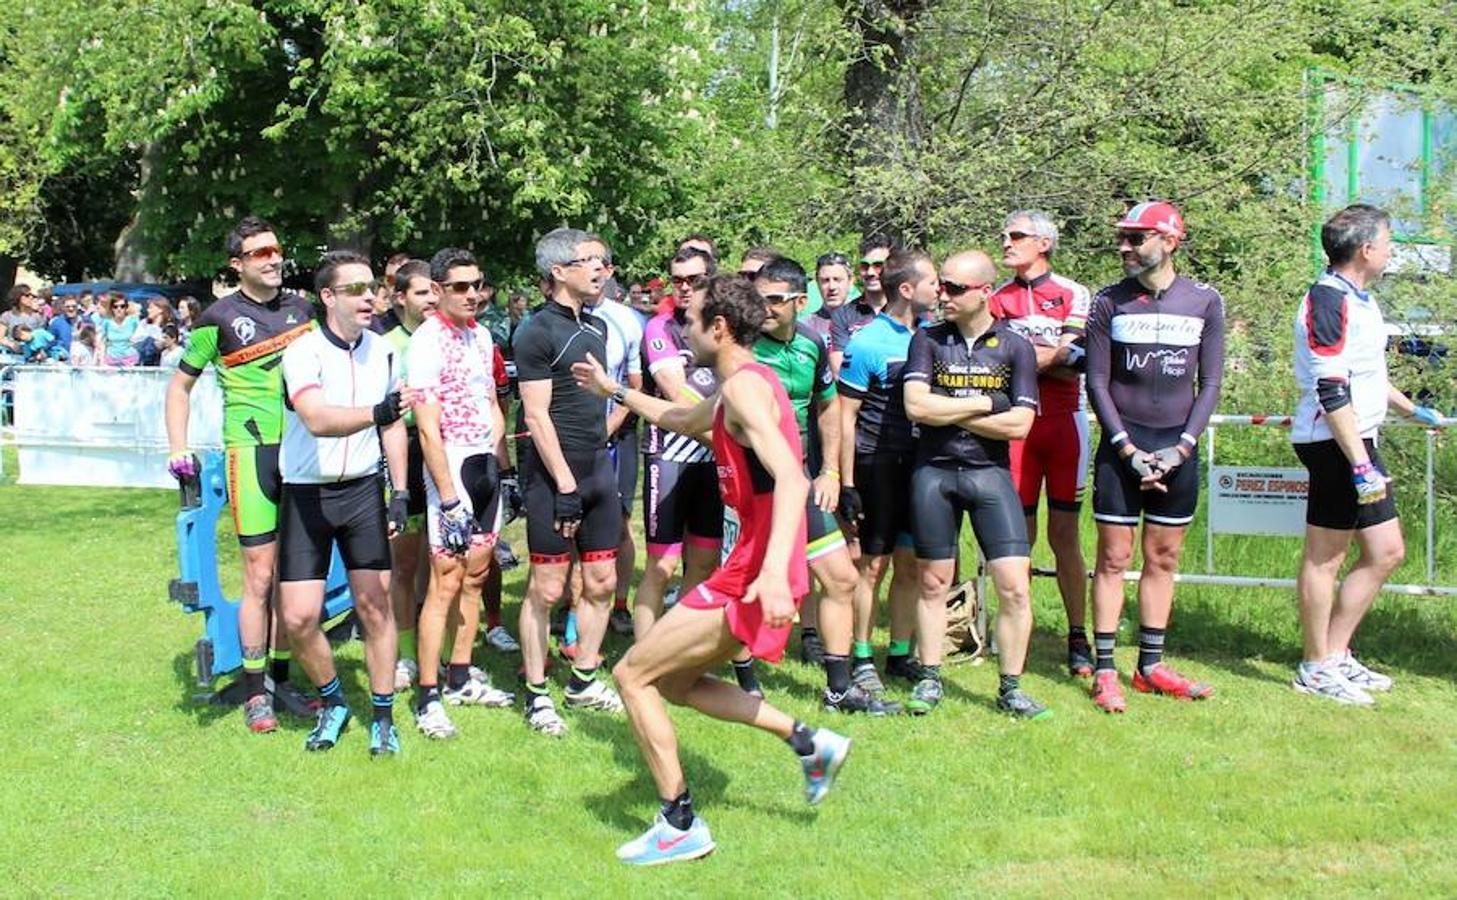 Imágenes correspondientes al Duatlón Cross Carrasquedo que se ha celebrao en Grañón y que ha sido valedero para el Campeonato de La Rioja de la modalidad. El día ha sido óptimo para la celebración de la prueba deportiva sobre un trazado de 6km-22km y 3km.